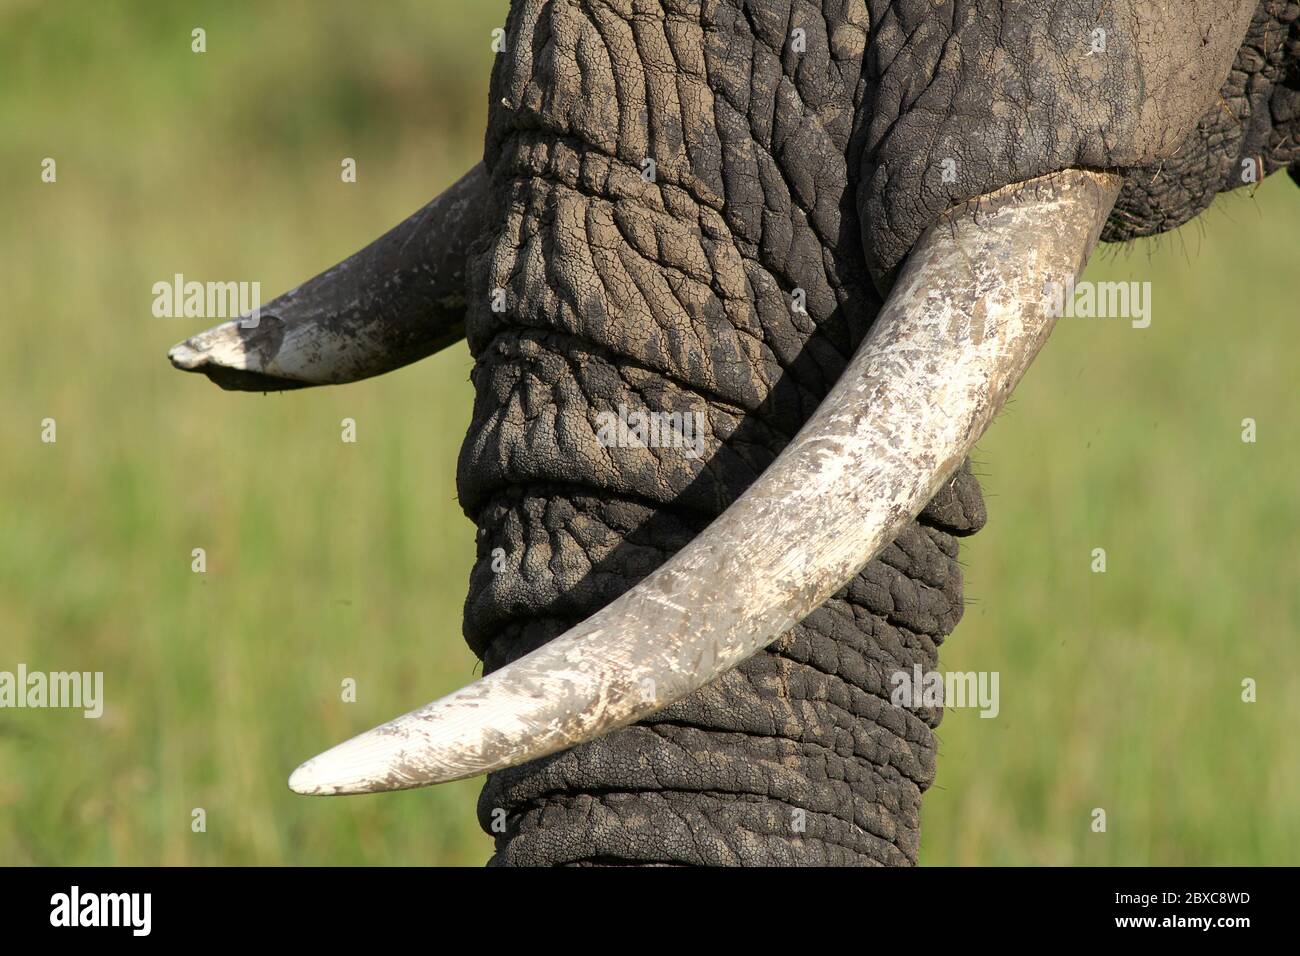 Primo piano del tronco di un elefante con un crepuscolo rotto, sfondo verde-giallo sfocato Foto Stock